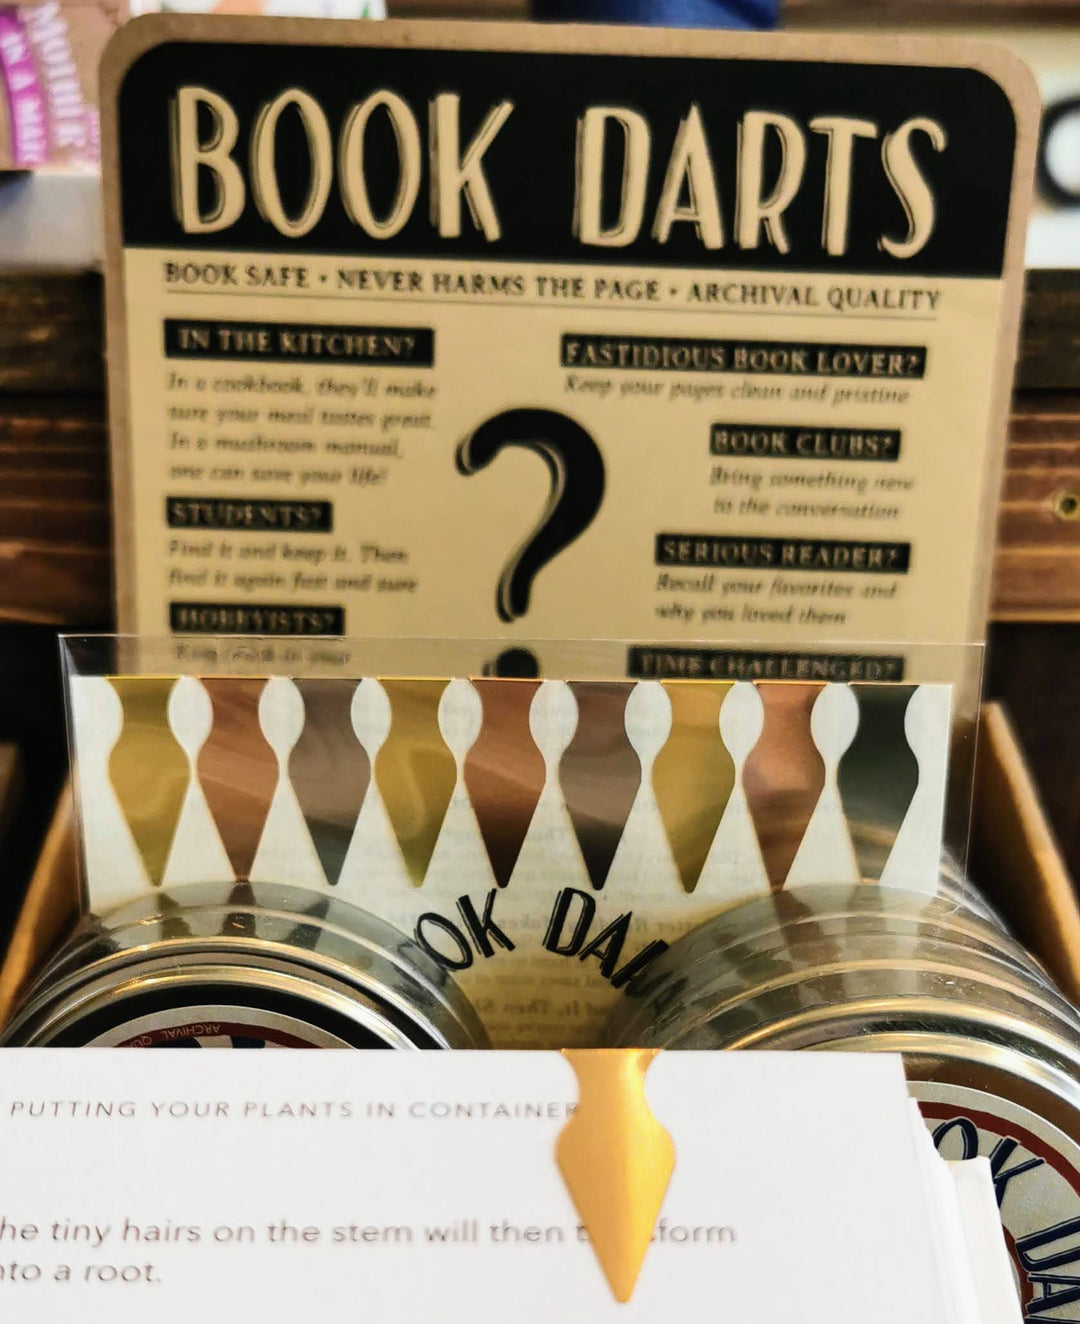 Book Darts | Set of 50 | Mixed Color